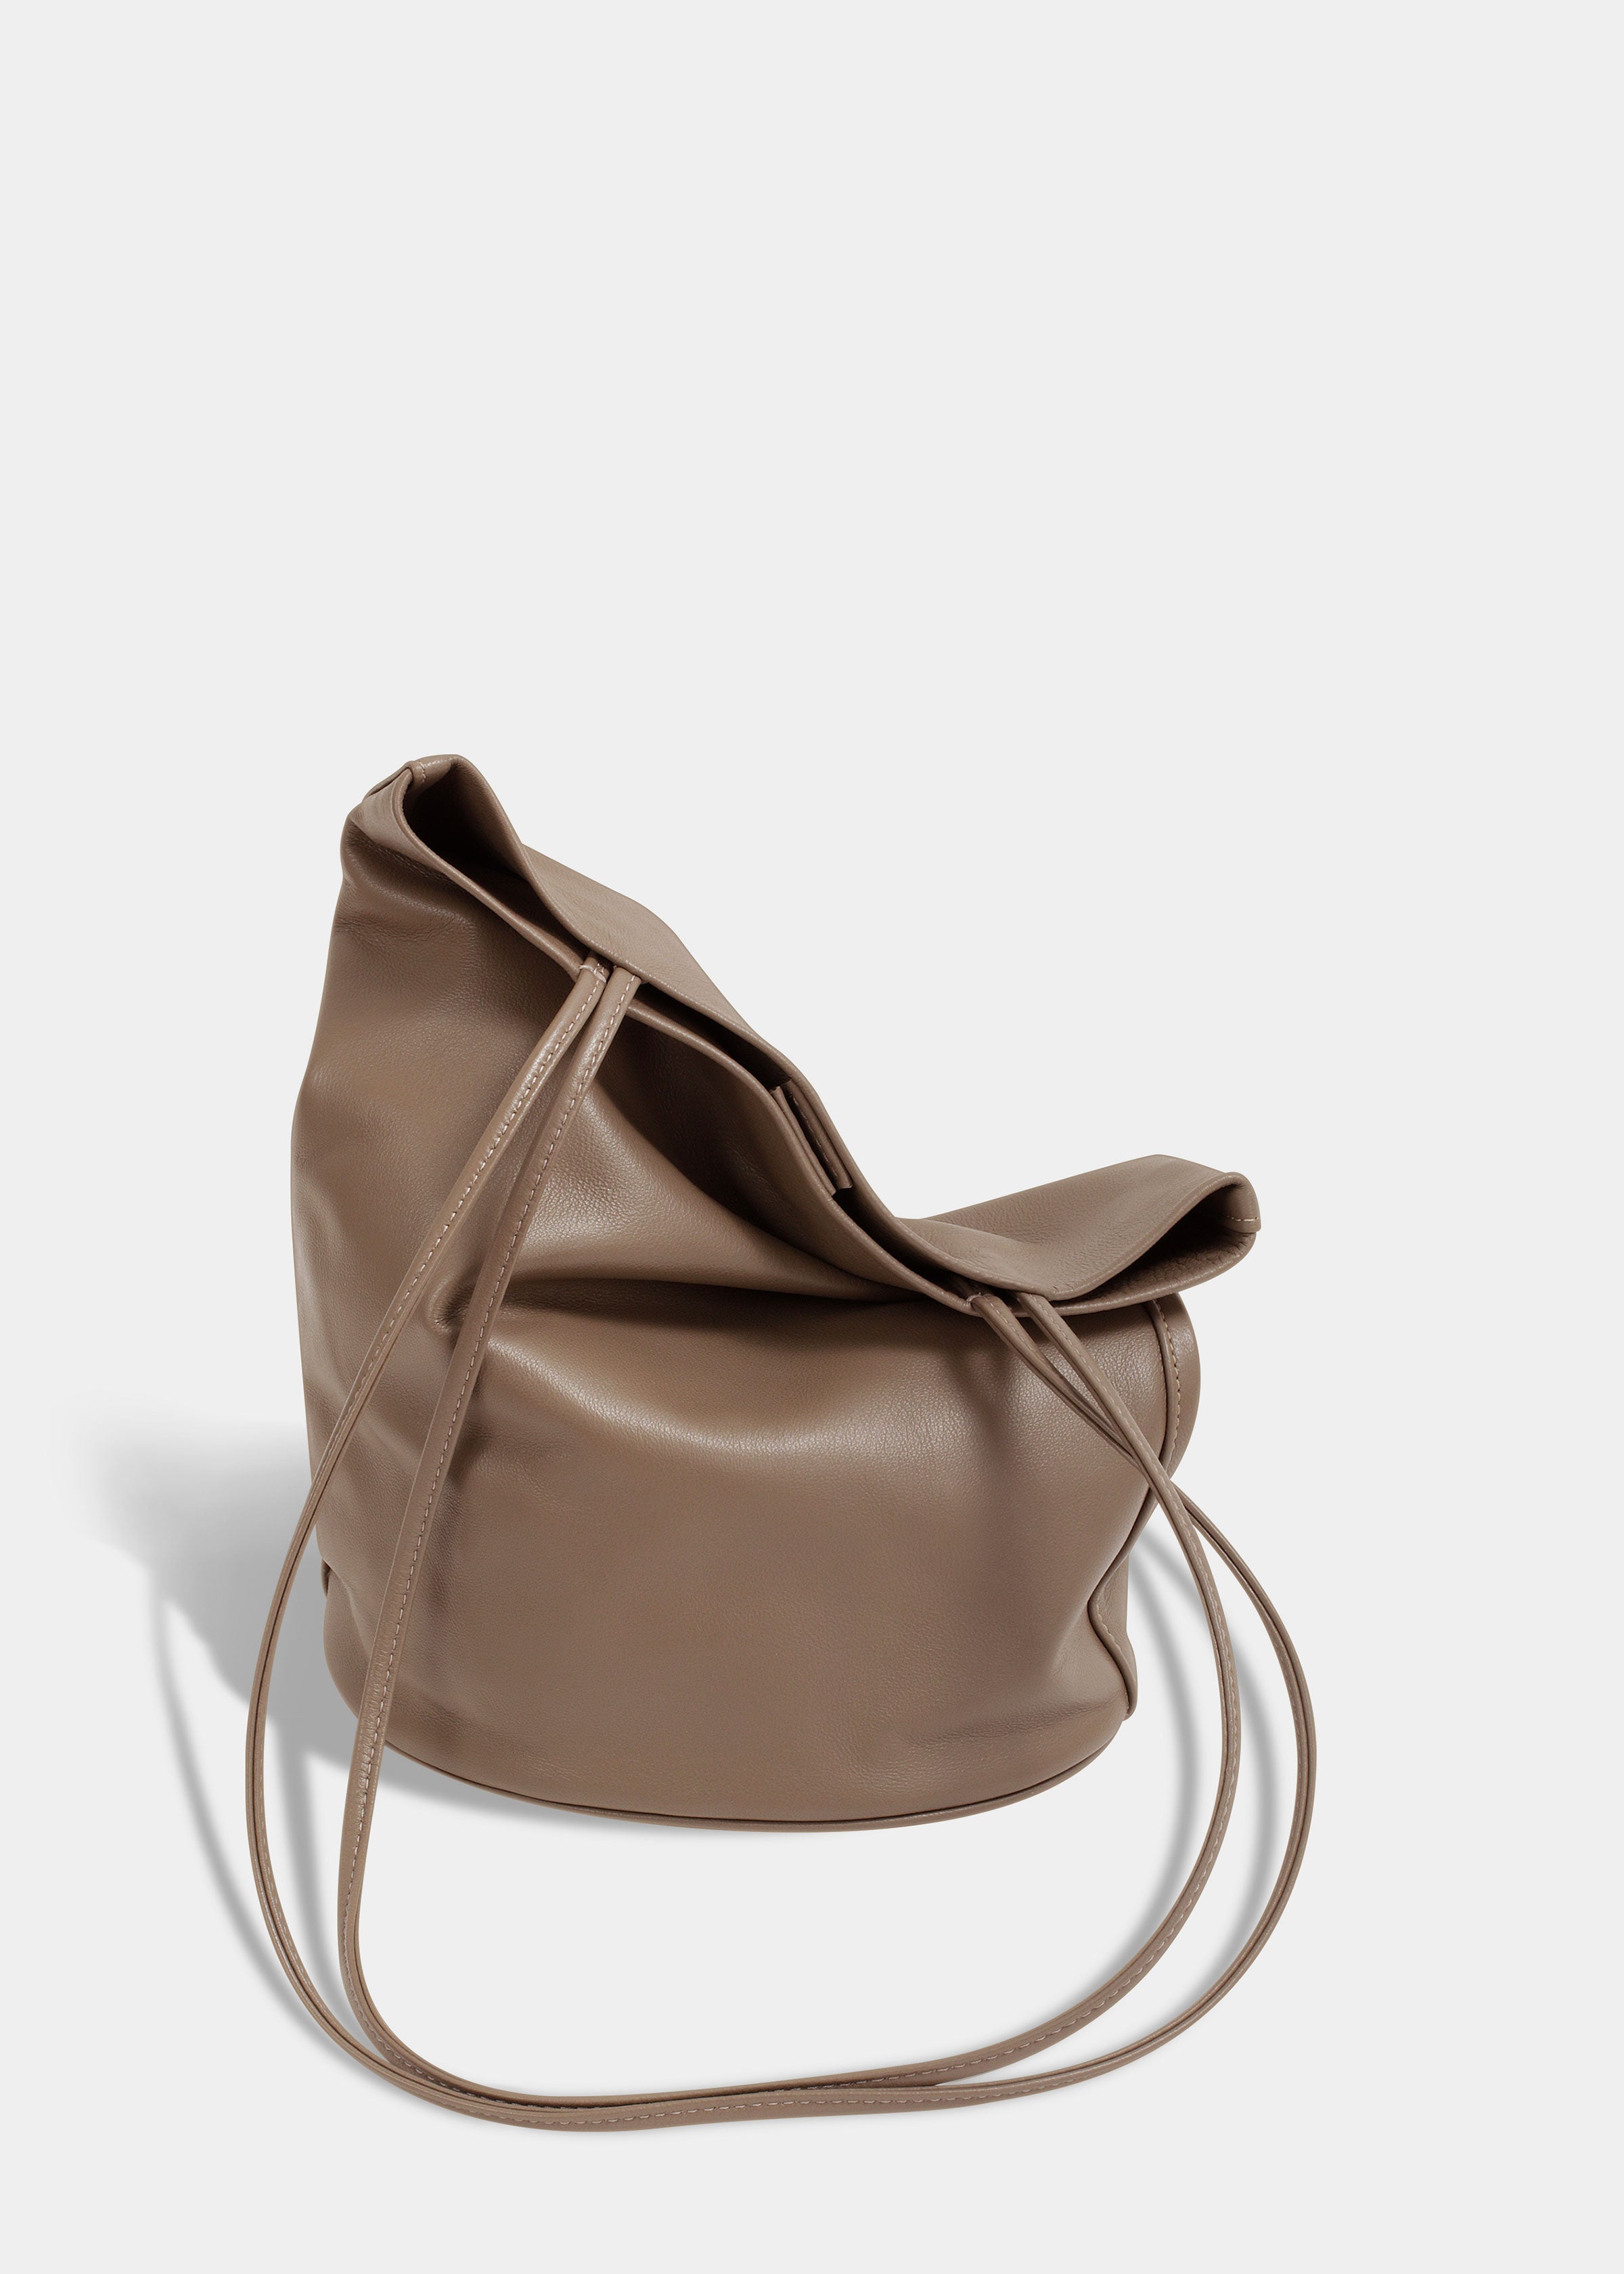 Drape Oval Bucket | Earth | Handbags | Modern Weaving | Modern Weaving